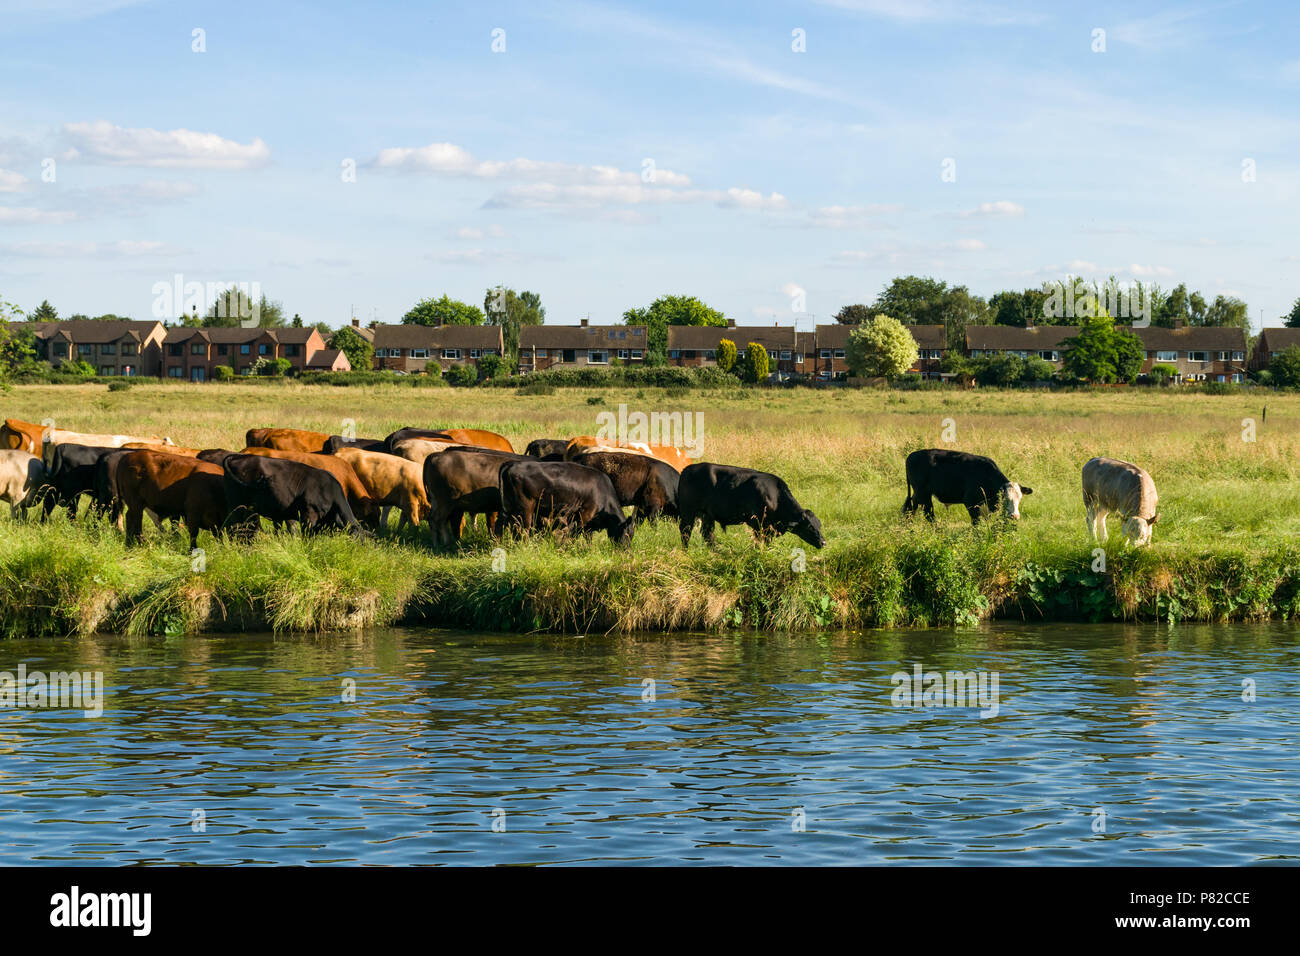 Una mandria di mucche al pascolo lungo il fiume Cam in un campo con case in background, Cambridge, Regno Unito Foto Stock